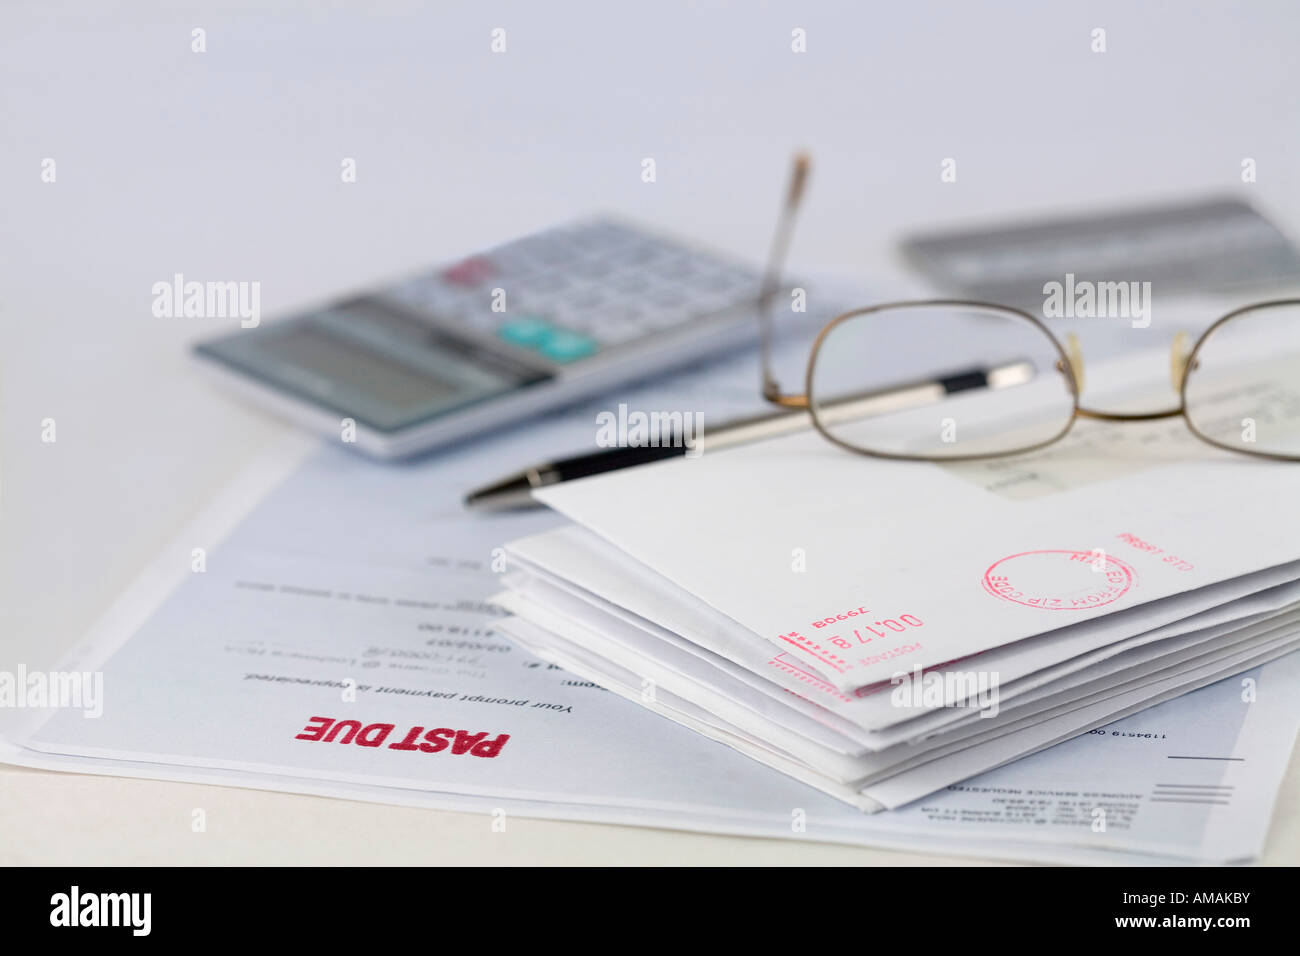 Stapel Umschläge mit Stift, Taschenrechner, Gläser und Kreditkarte Stockfoto